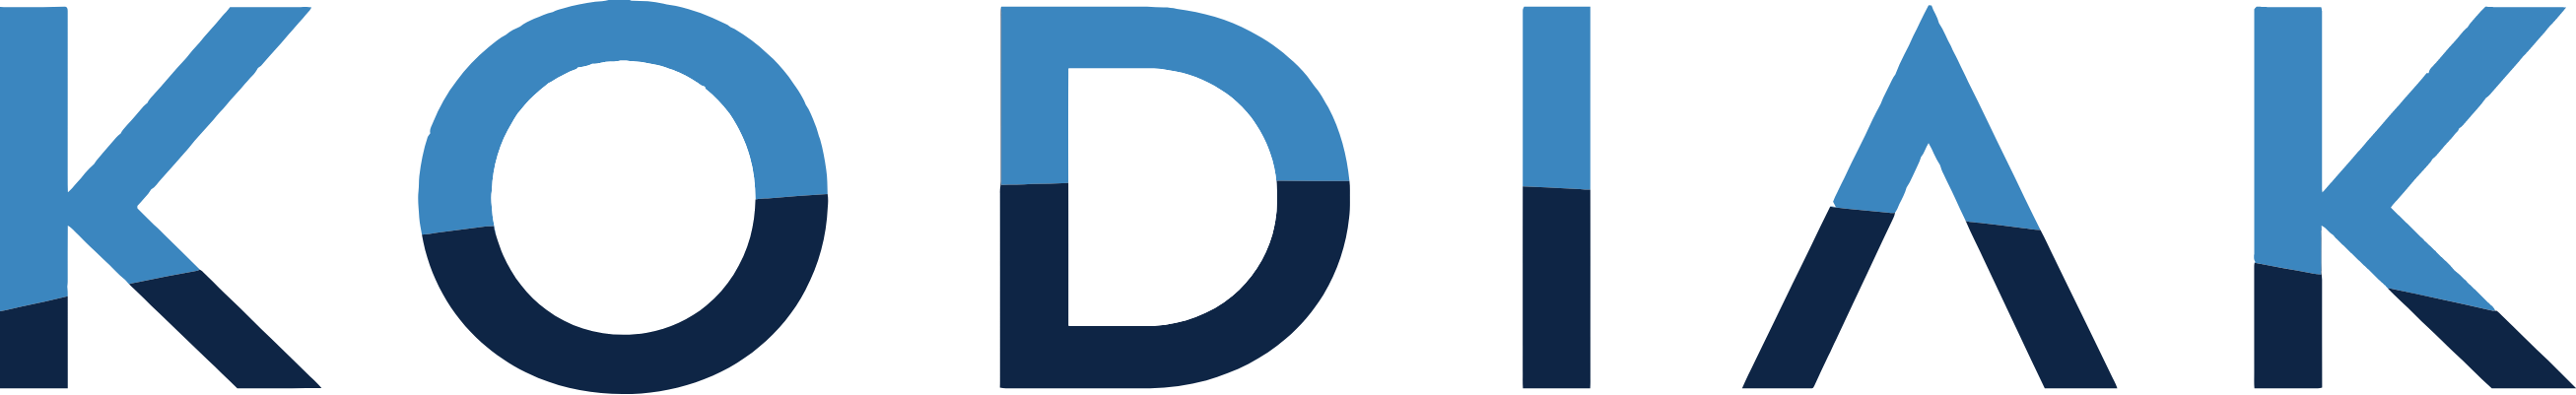 Kodiak Sciences
 logo large (transparent PNG)